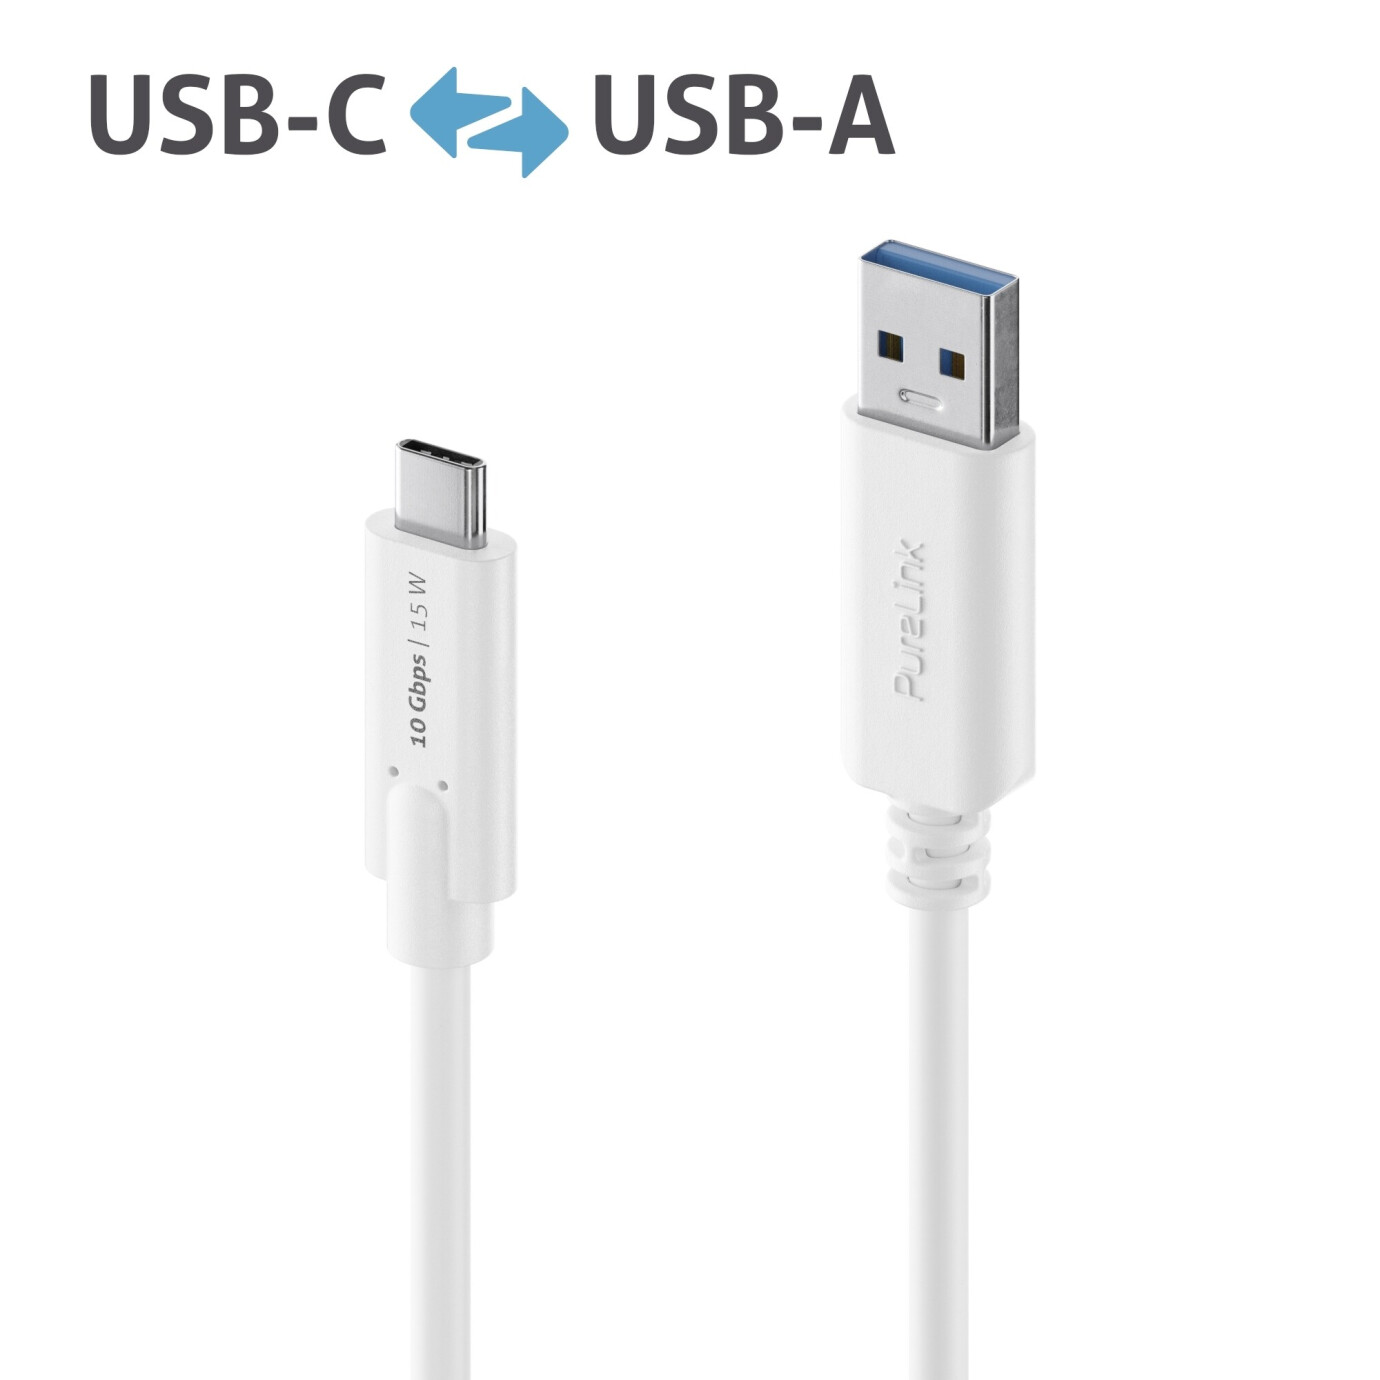 Purelink IS2610-010 USB-C auf USB-A (Gen 2) Kabel 1m weiß